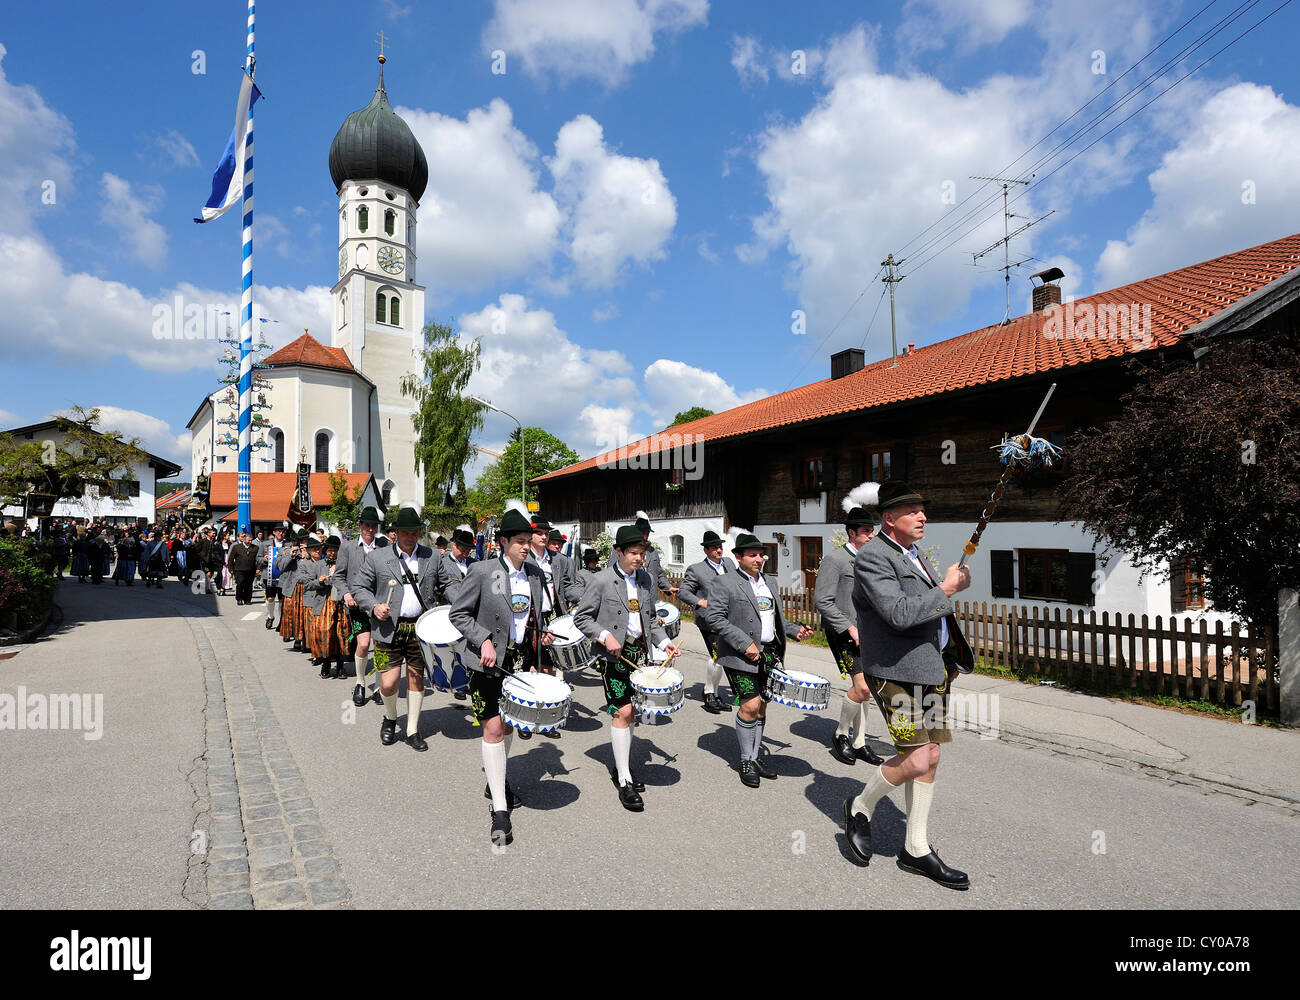 Costume parade in Gelting, Upper Bavaria, Bavaria, PublicGround Stock Photo